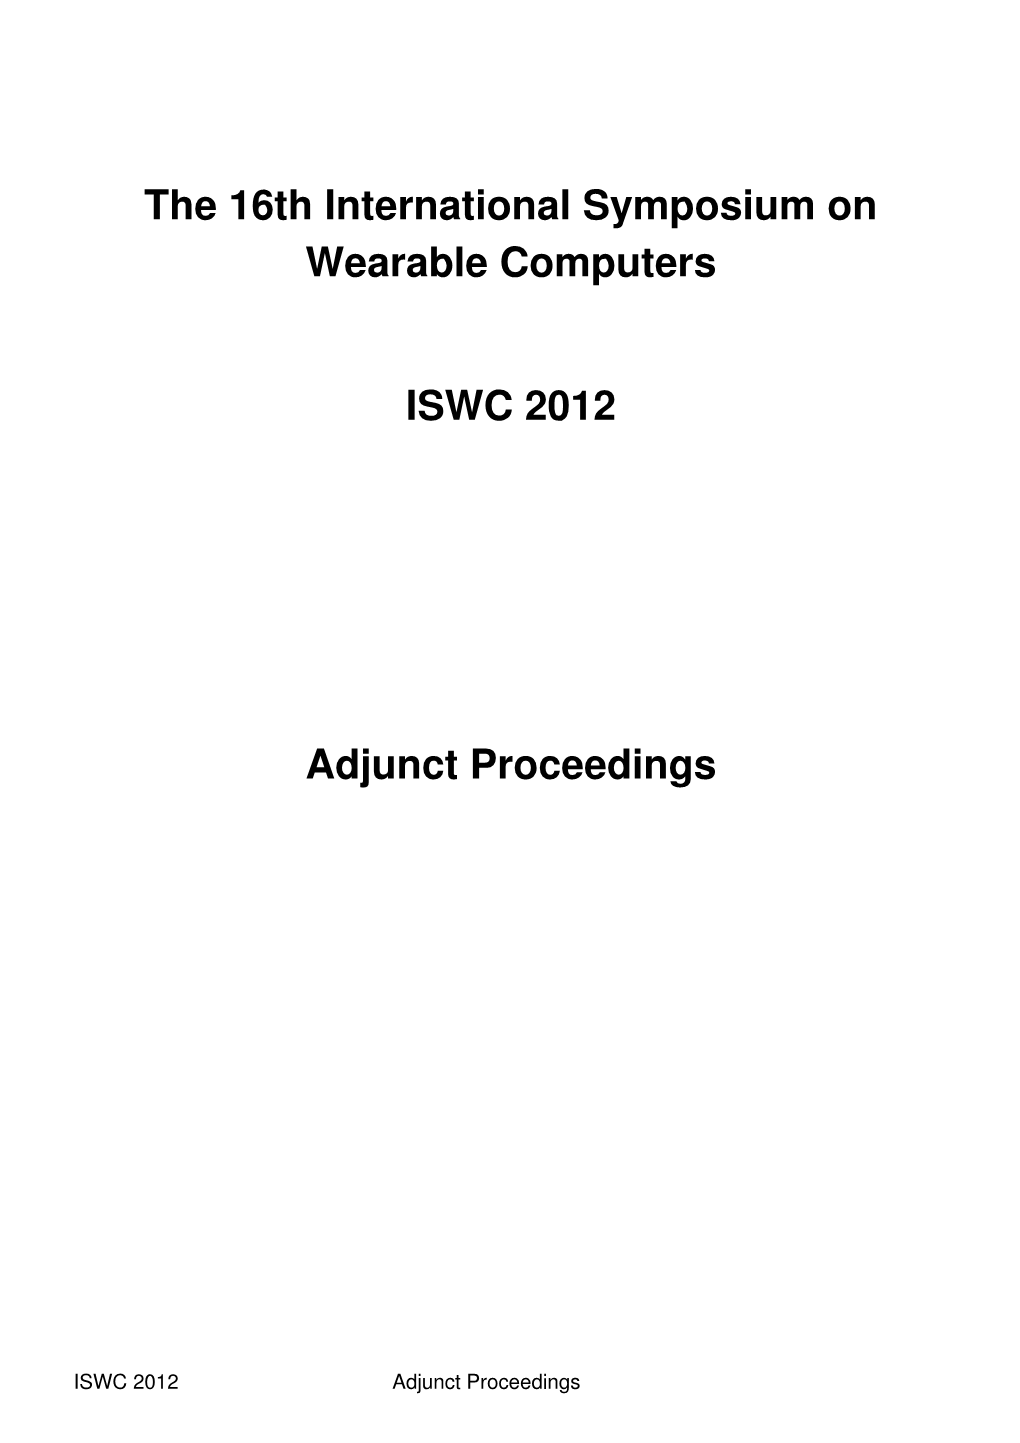 Download the ISWC 2012 Adjunct Proceedings